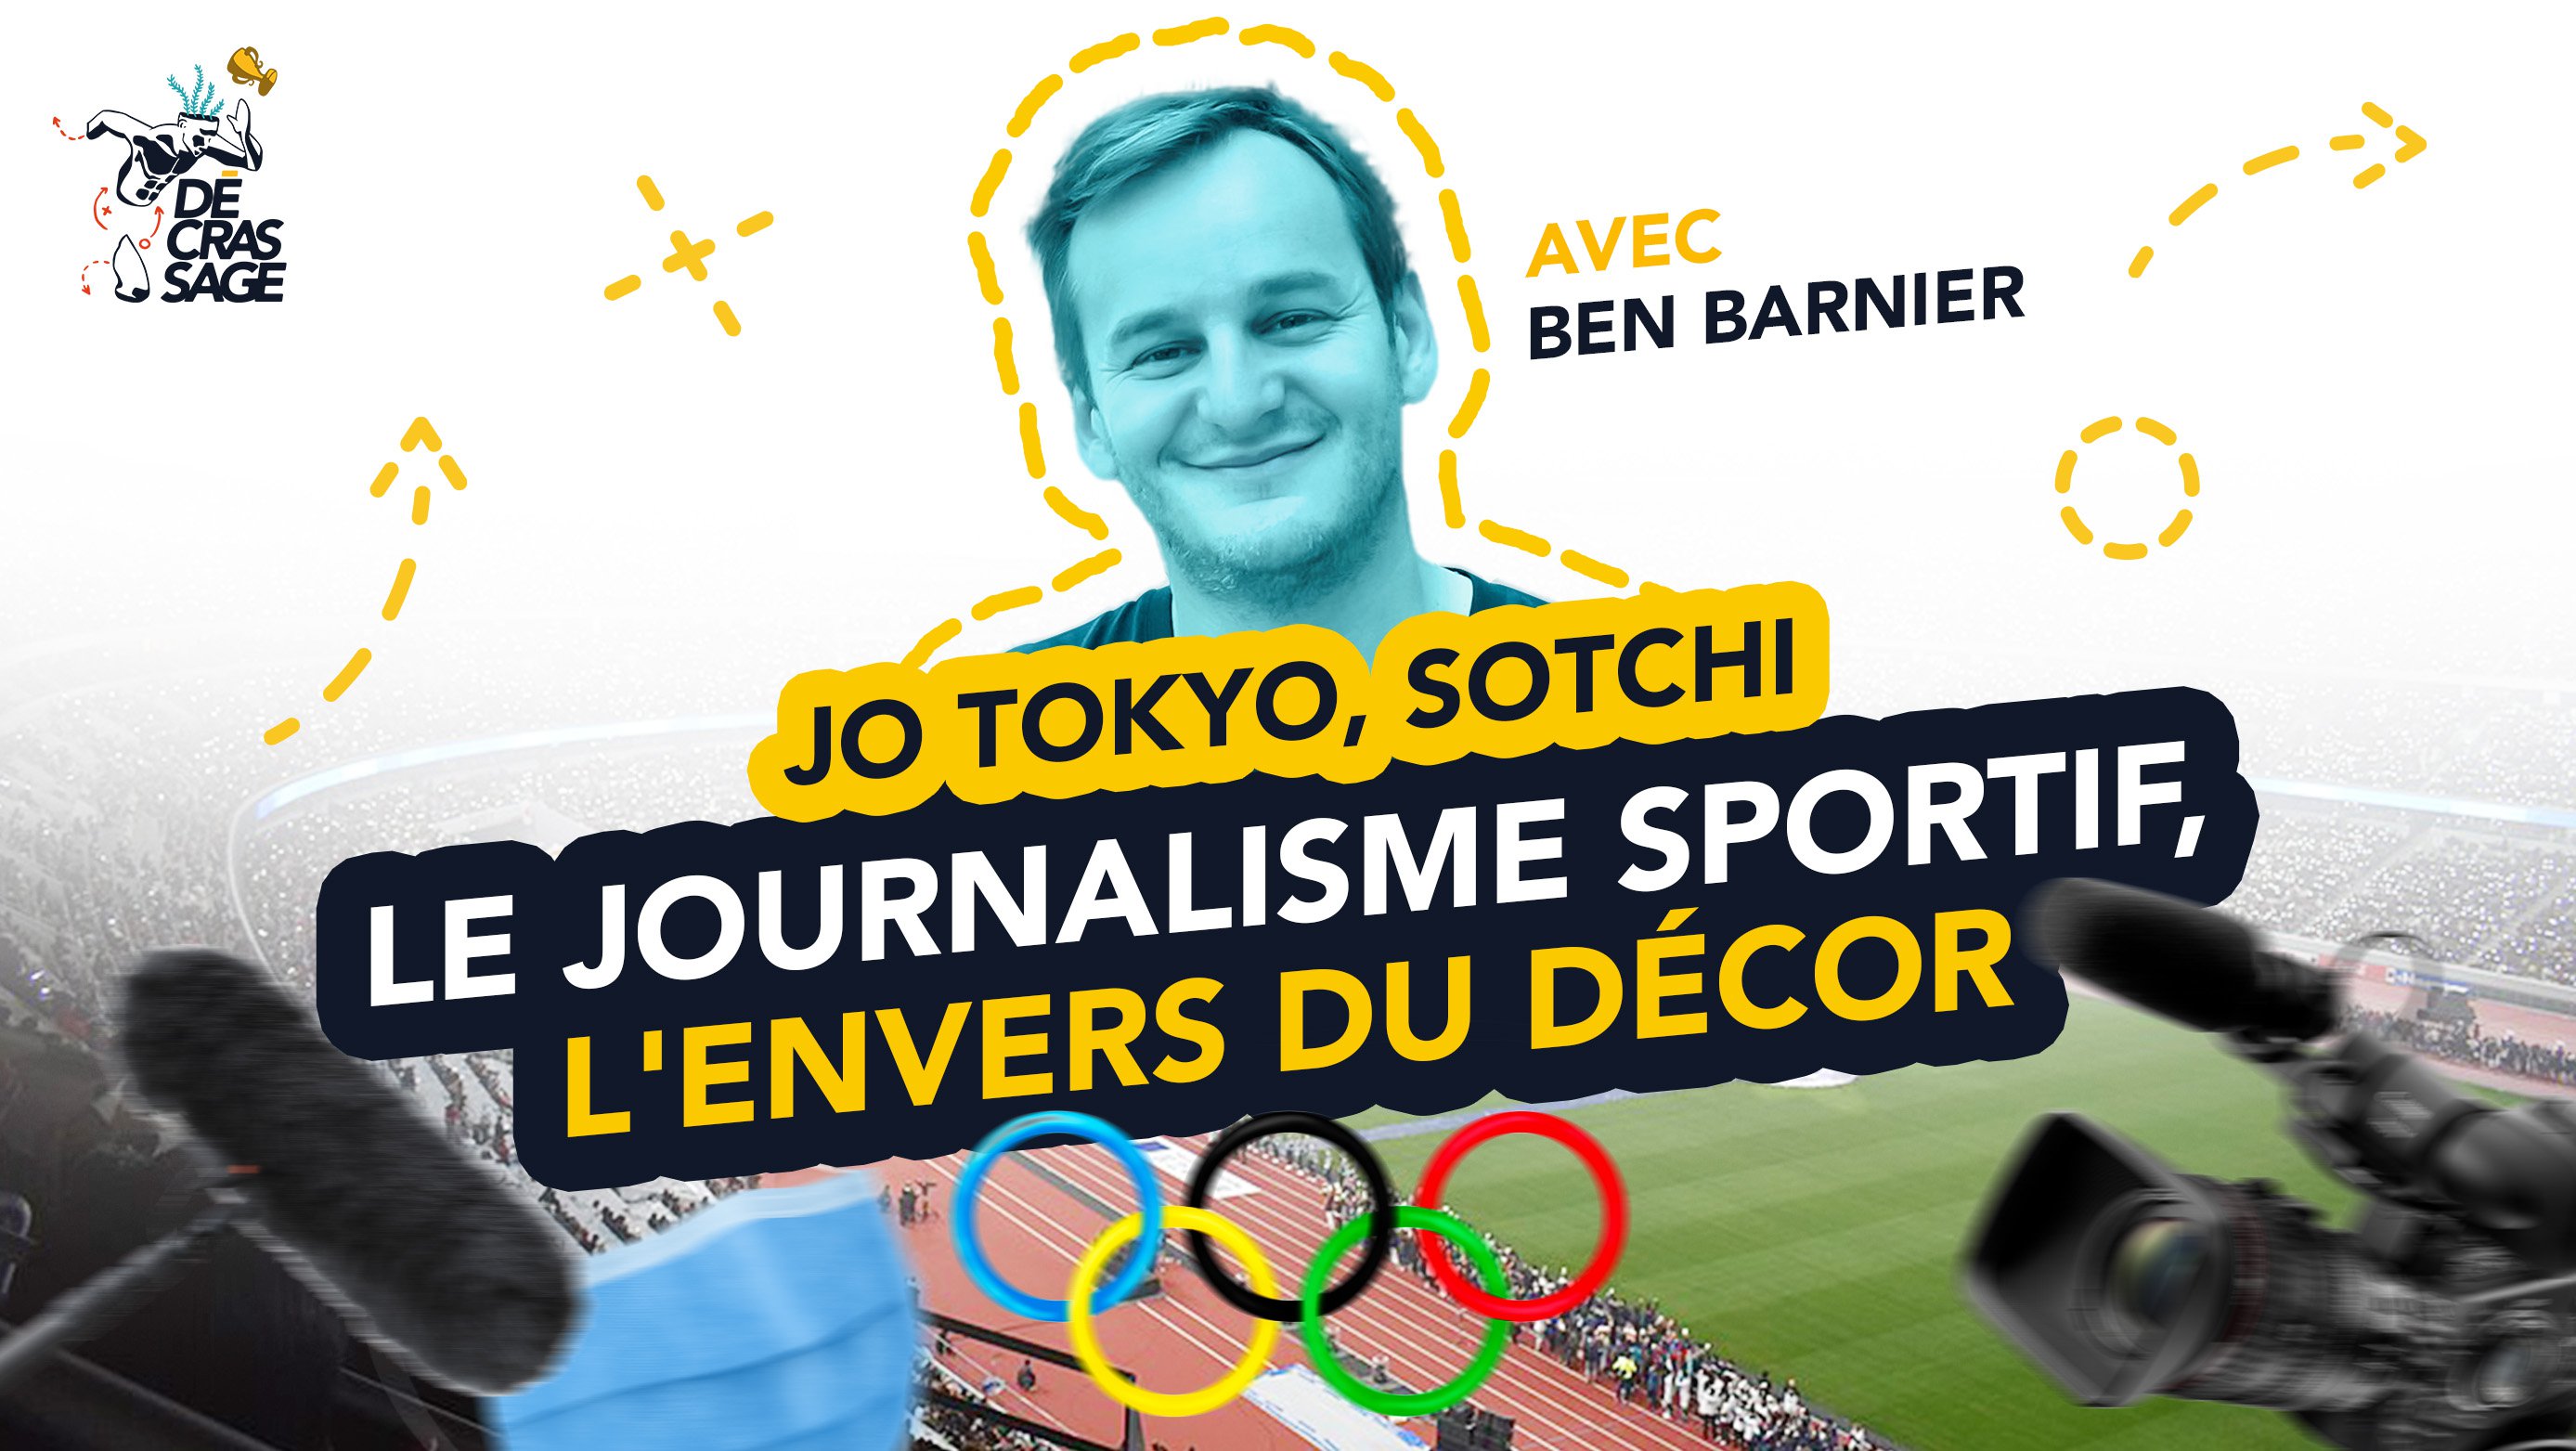 Olympiade in Tokio, Sotschi: Sportjournalismus und hinter den Kulissen